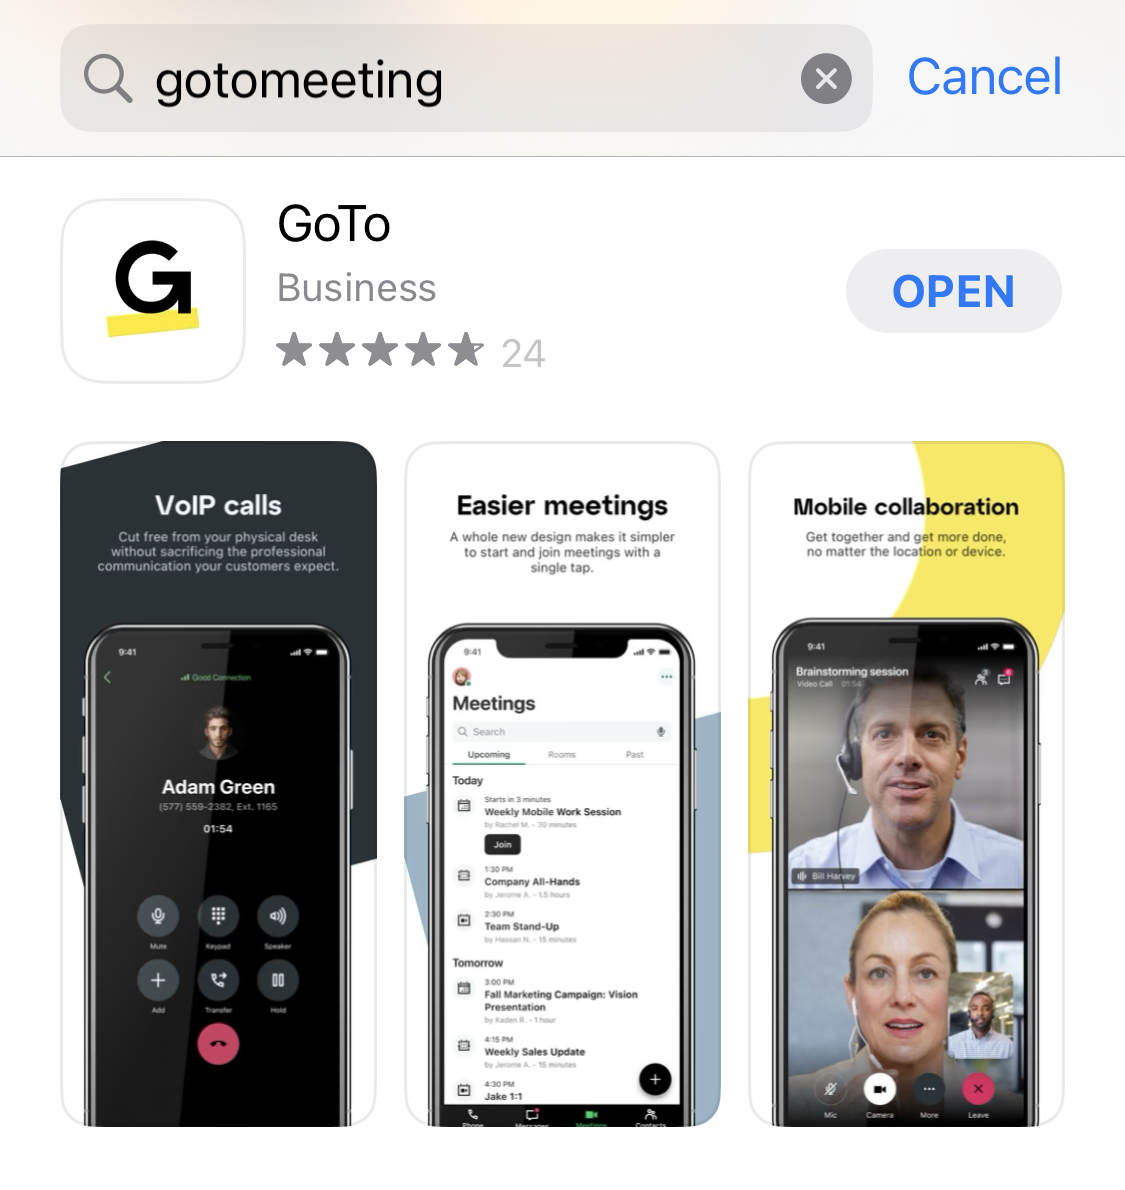 GoToMeeting on mobile